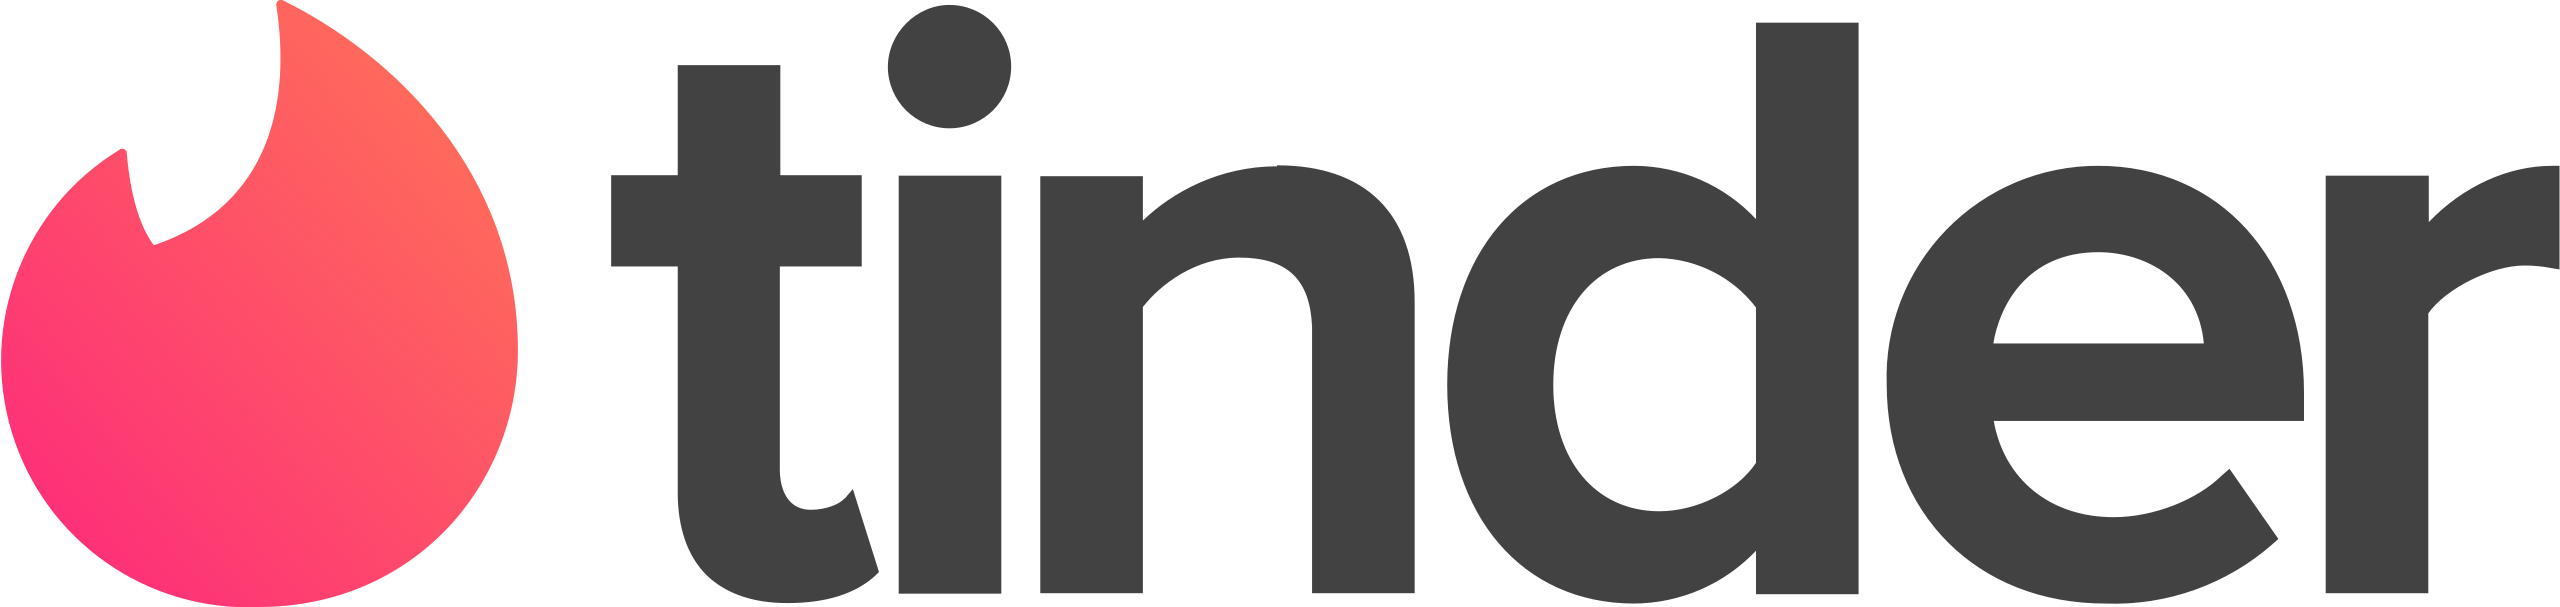 tinder-logo